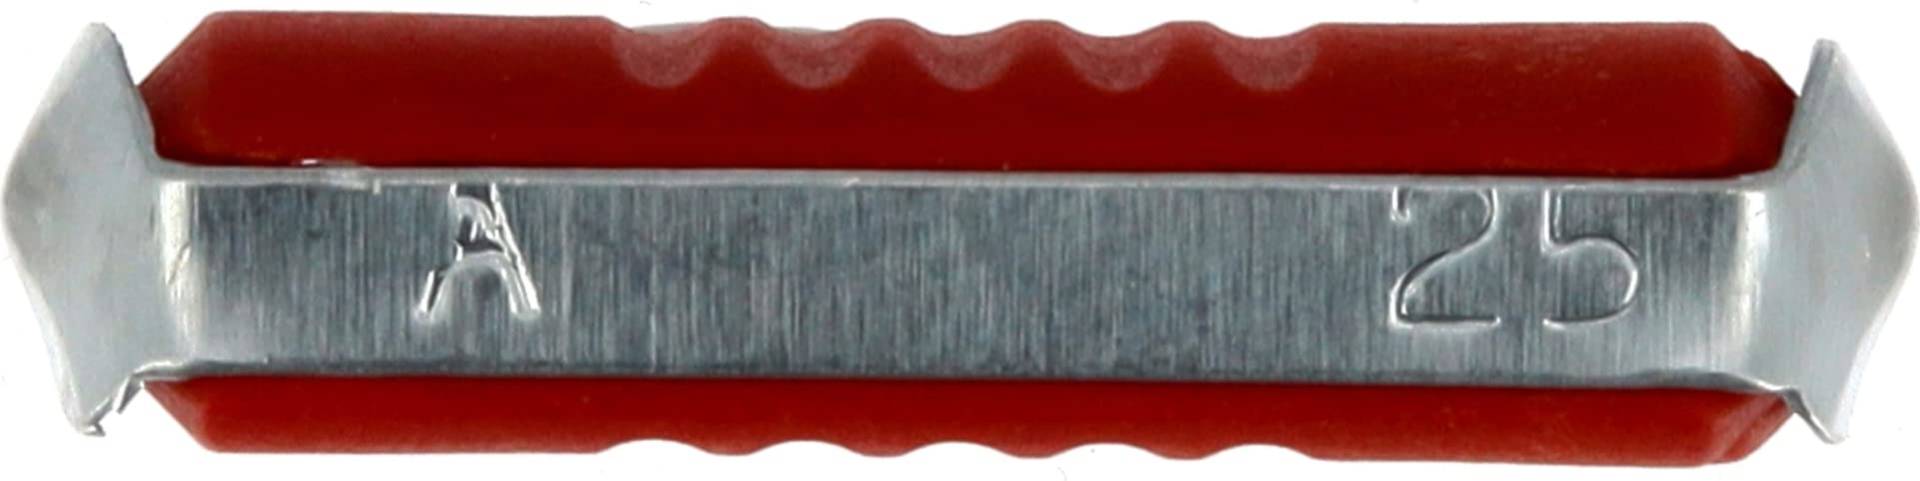 Restagraf Sicherung Speckstein im Beutel, 25 A, Rot von Restagraf